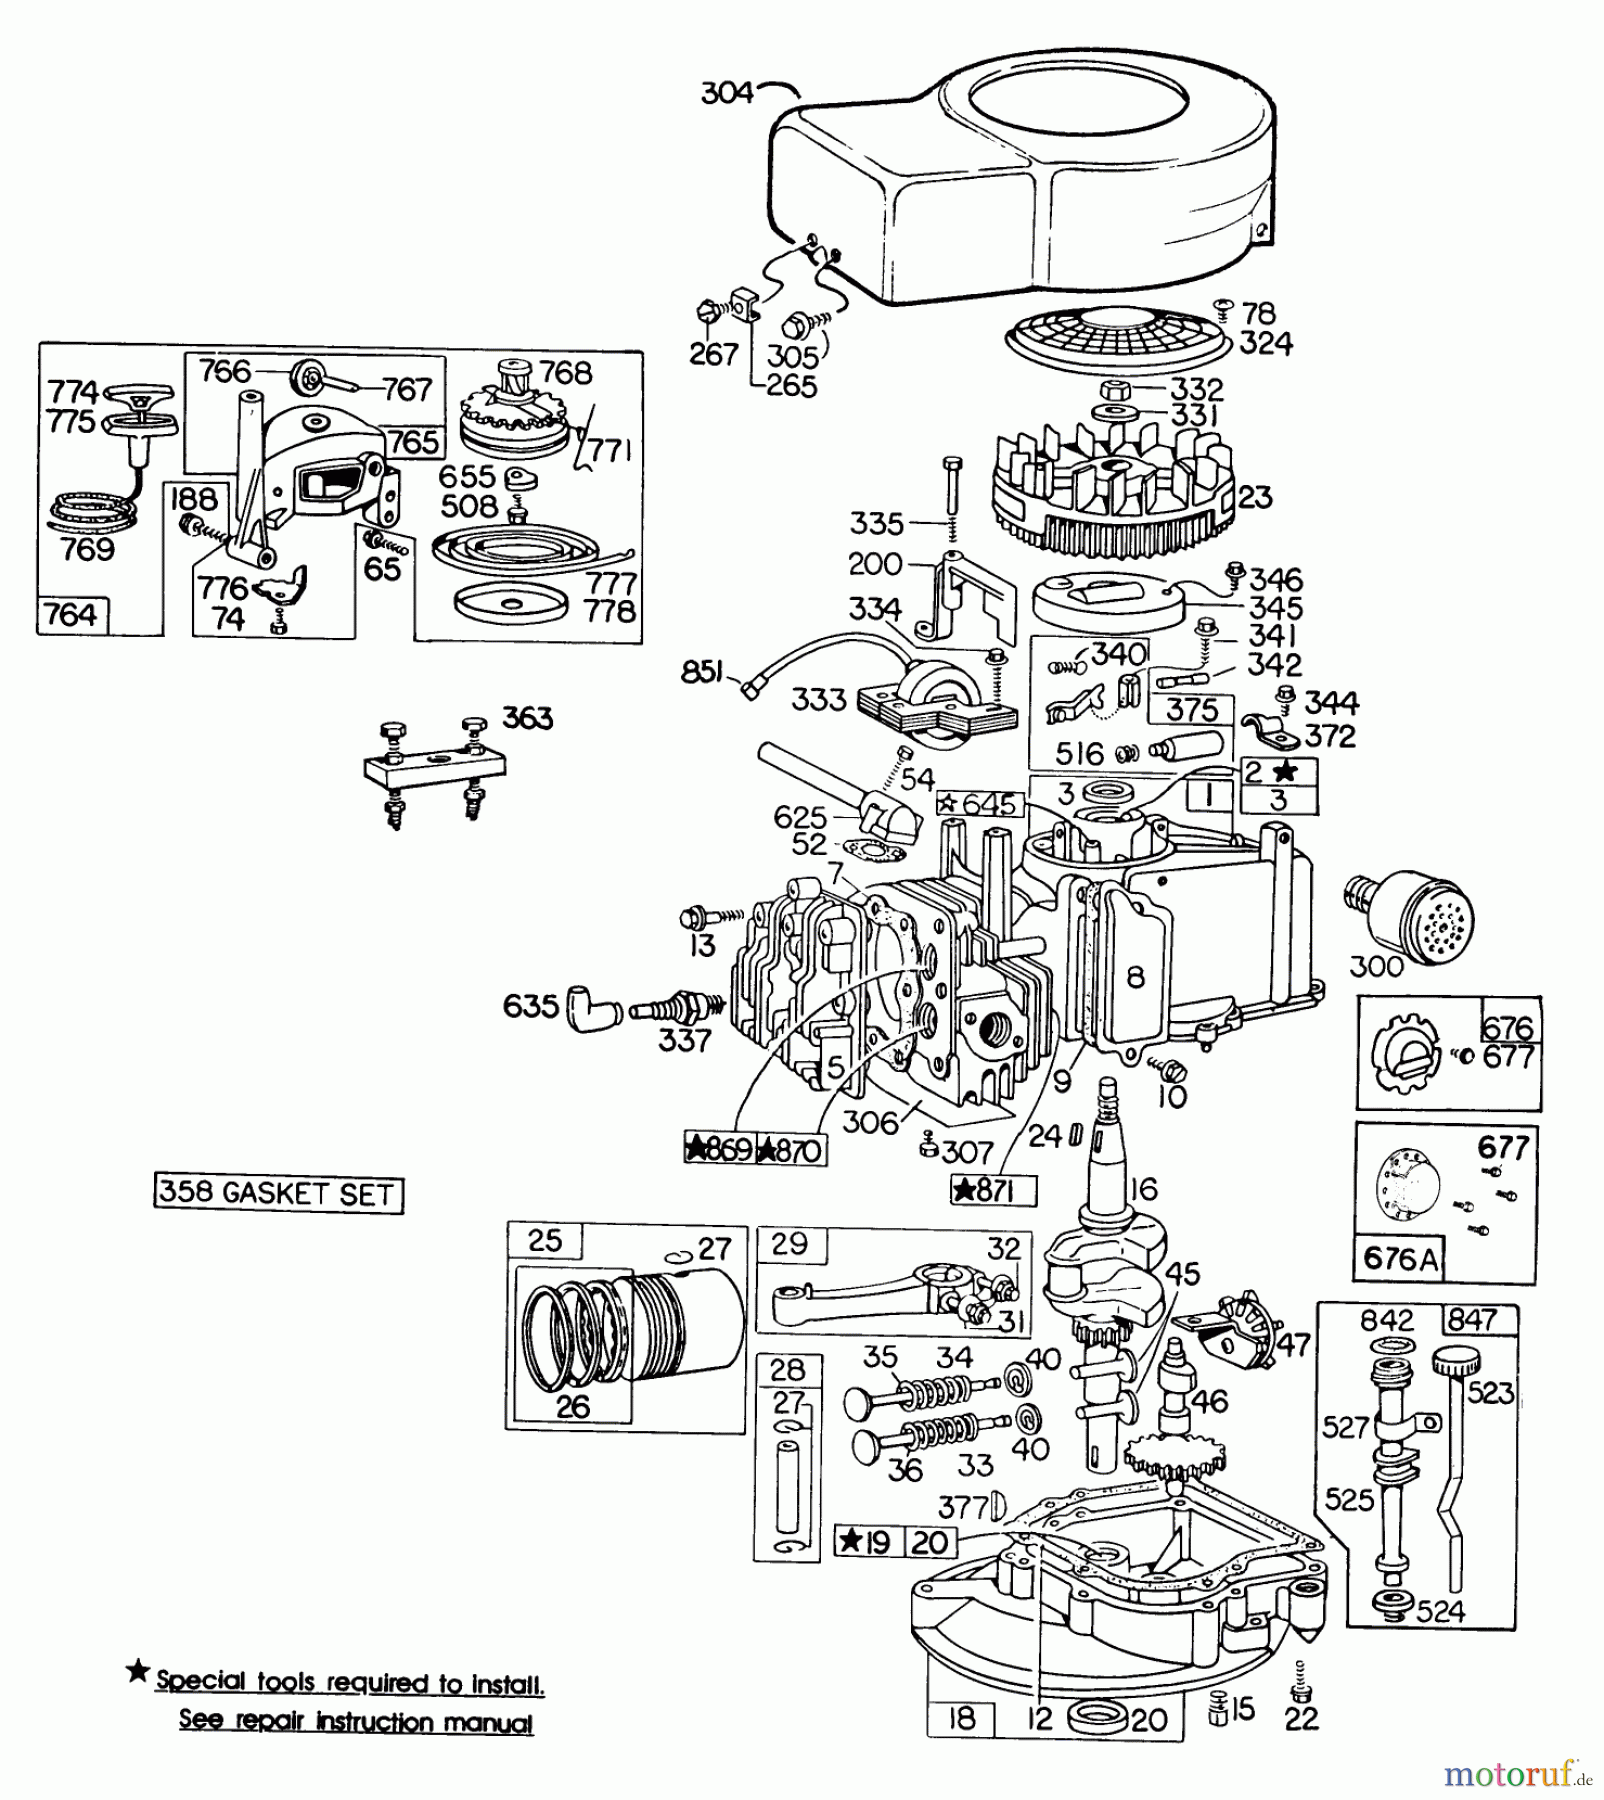  Toro Neu Mowers, Walk-Behind Seite 2 23400 - Toro Lawnmower, 1980 (0000001-0999999) ENGINE BRIGGS & STRATTON MODEL 110908-0492-01 #2